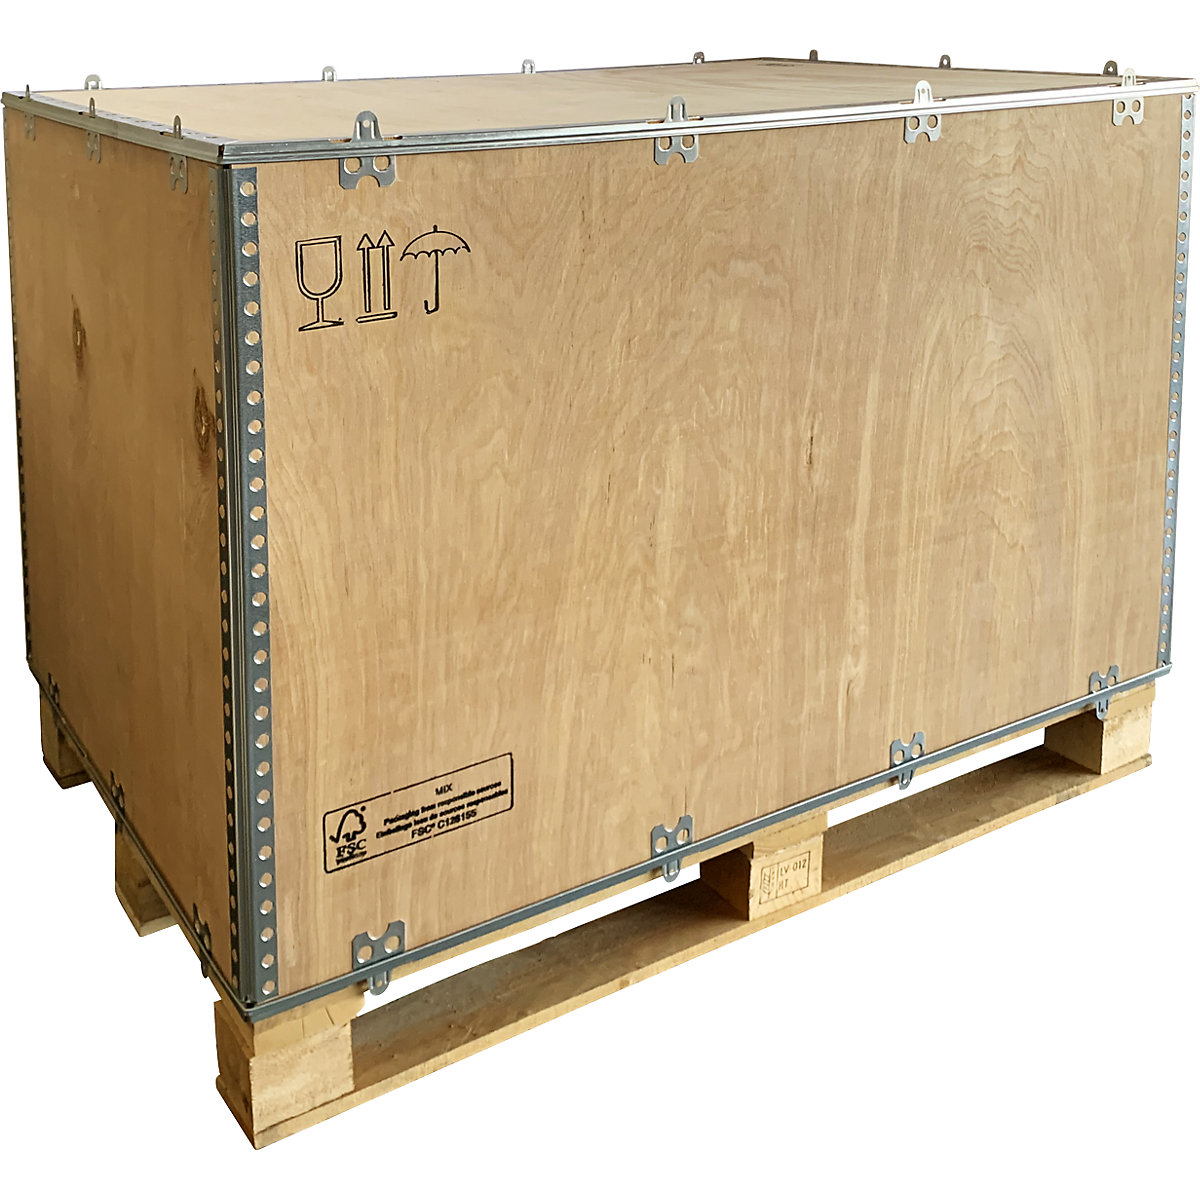 Caja plegable de madera, con listones, acceso inferior por 2 y 4 lados, L x A x H 1180 x 780 x 750 mm, a partir de 1 unid.-1